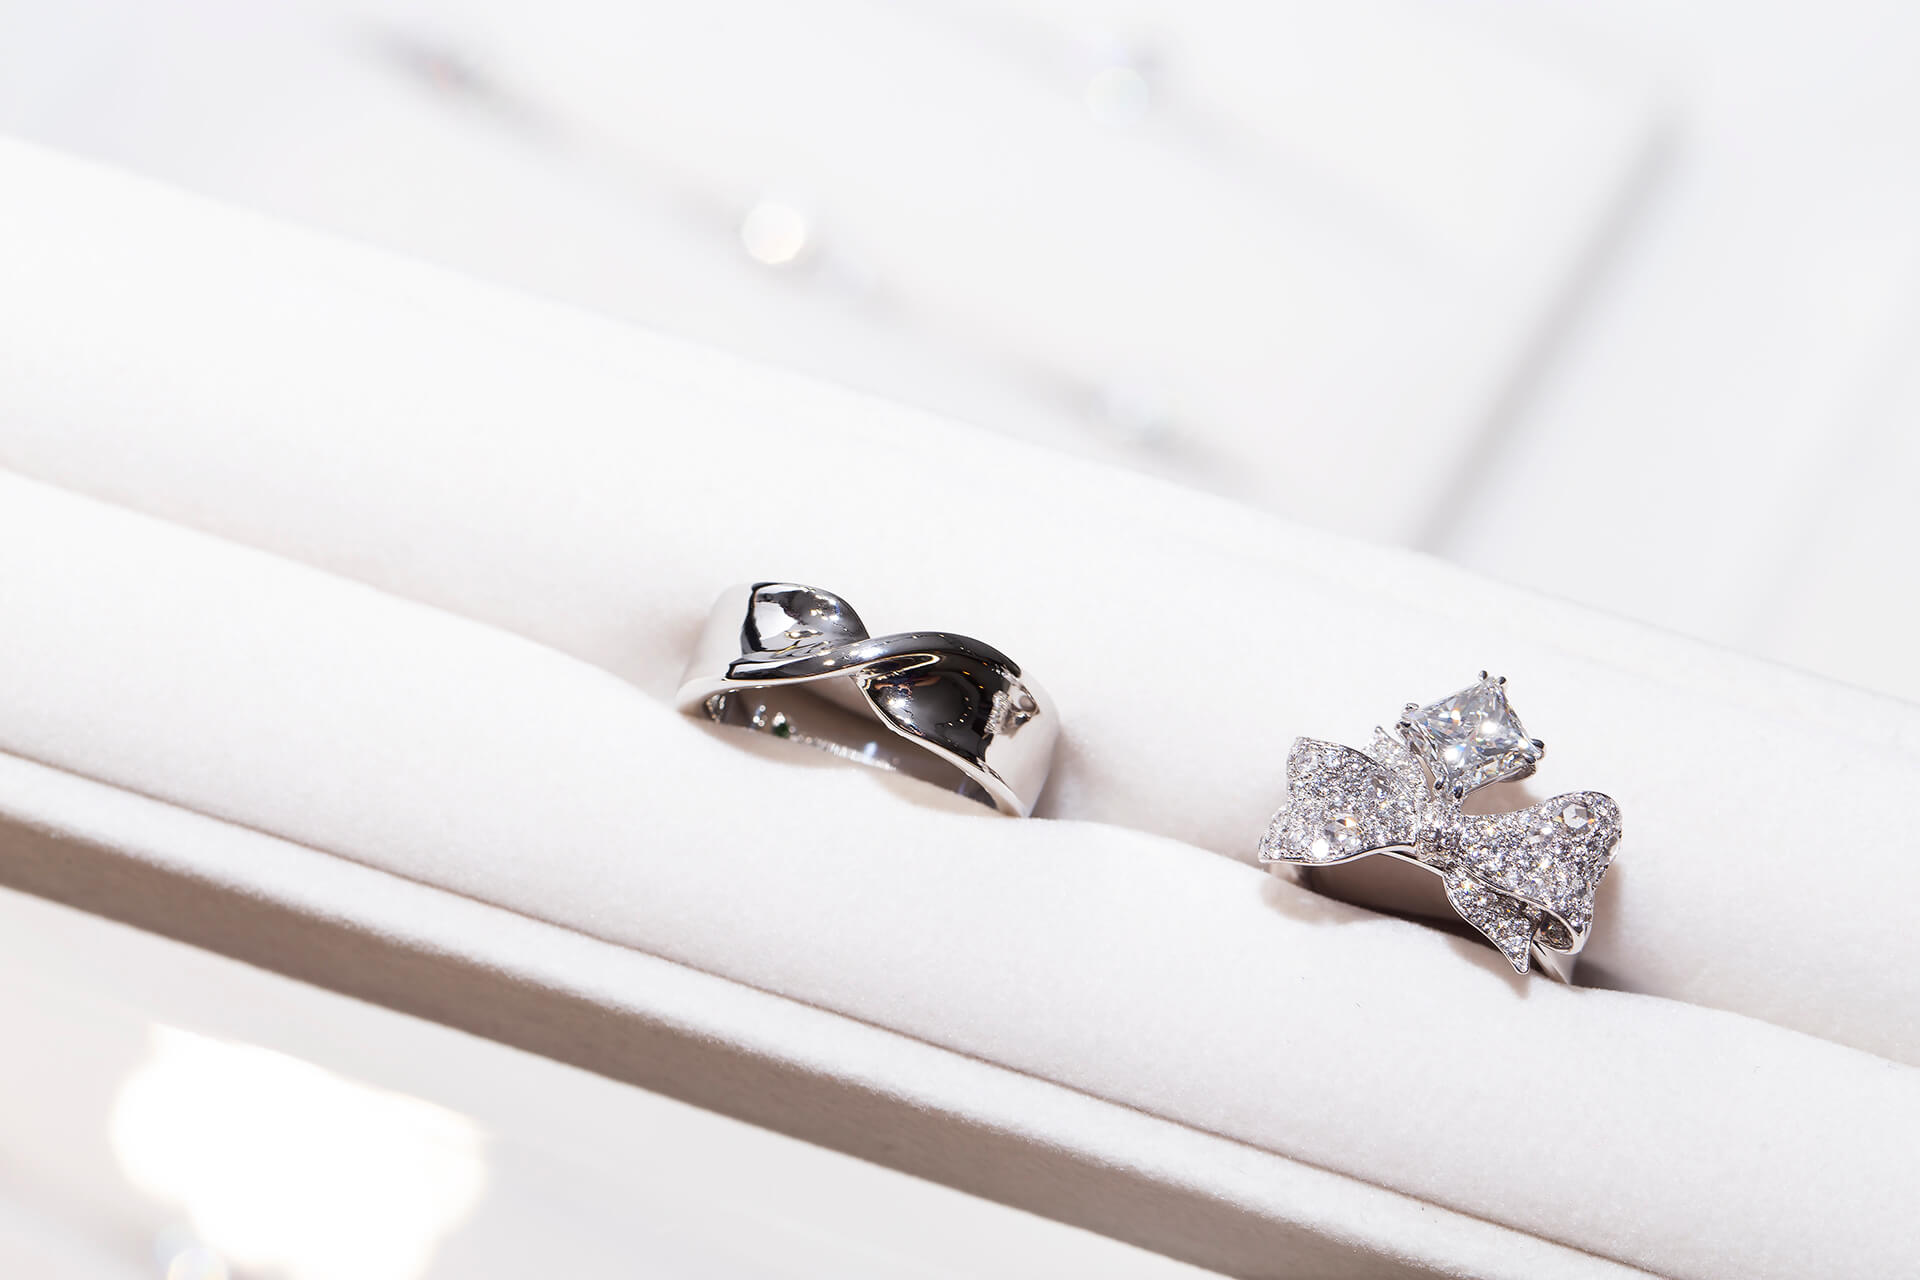 此珠寶設計以「彼此的禮物」為概念發想，用蝴蝶結的造型襯托1.7克拉的公主方鑽石